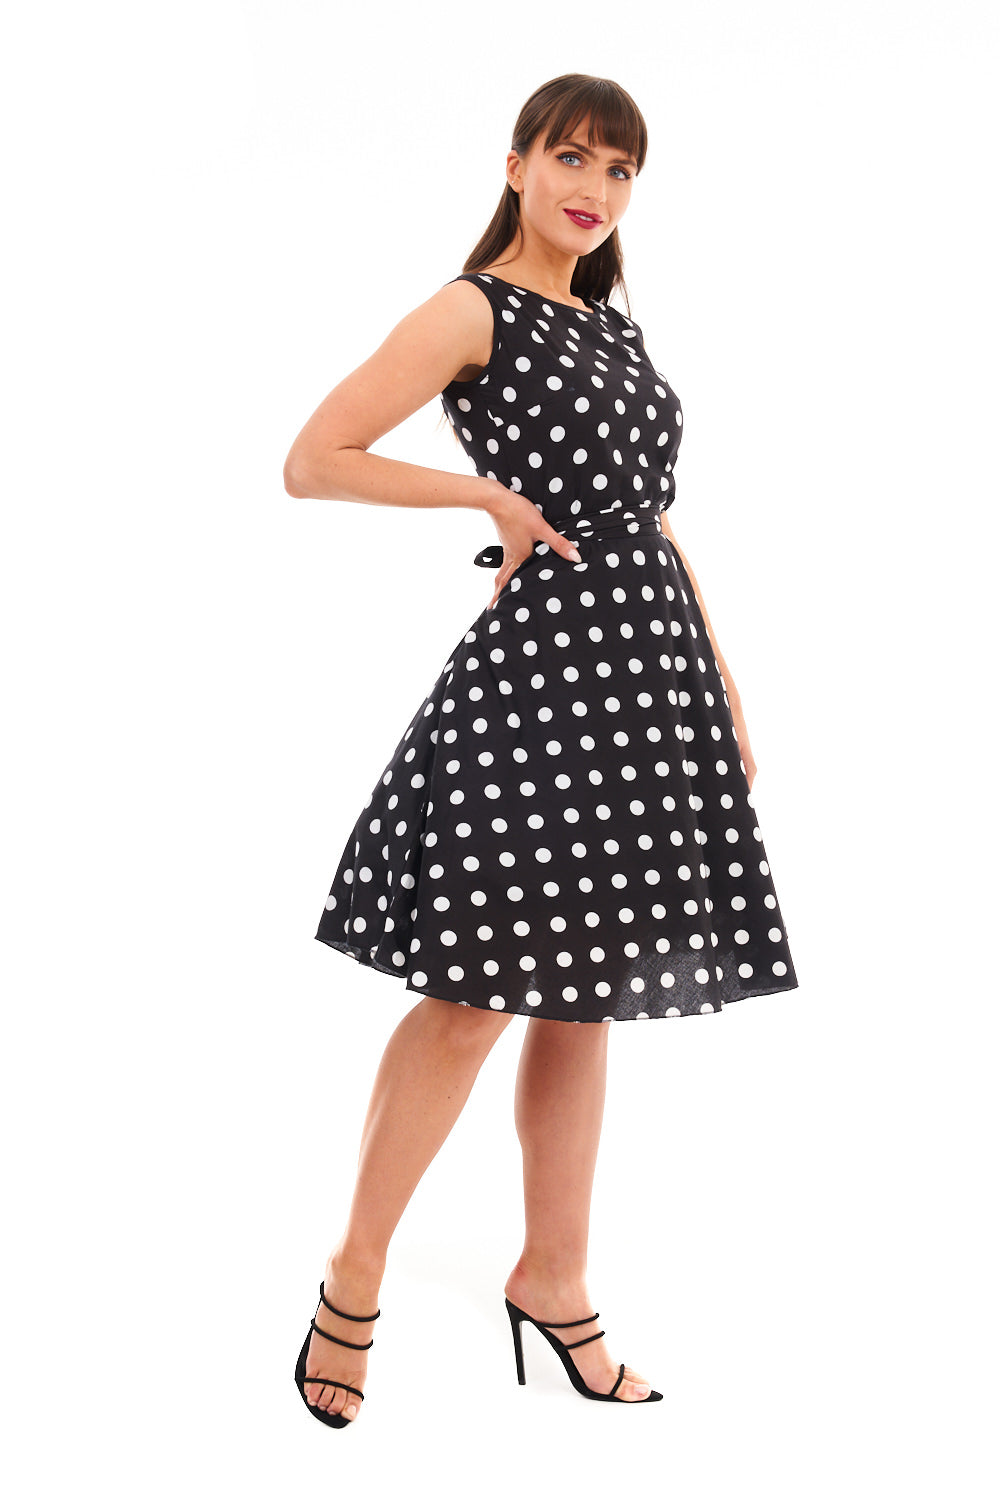 Ladies Retro Vintage 1940's / 1950s Inspired Polka Dot Dress in Black